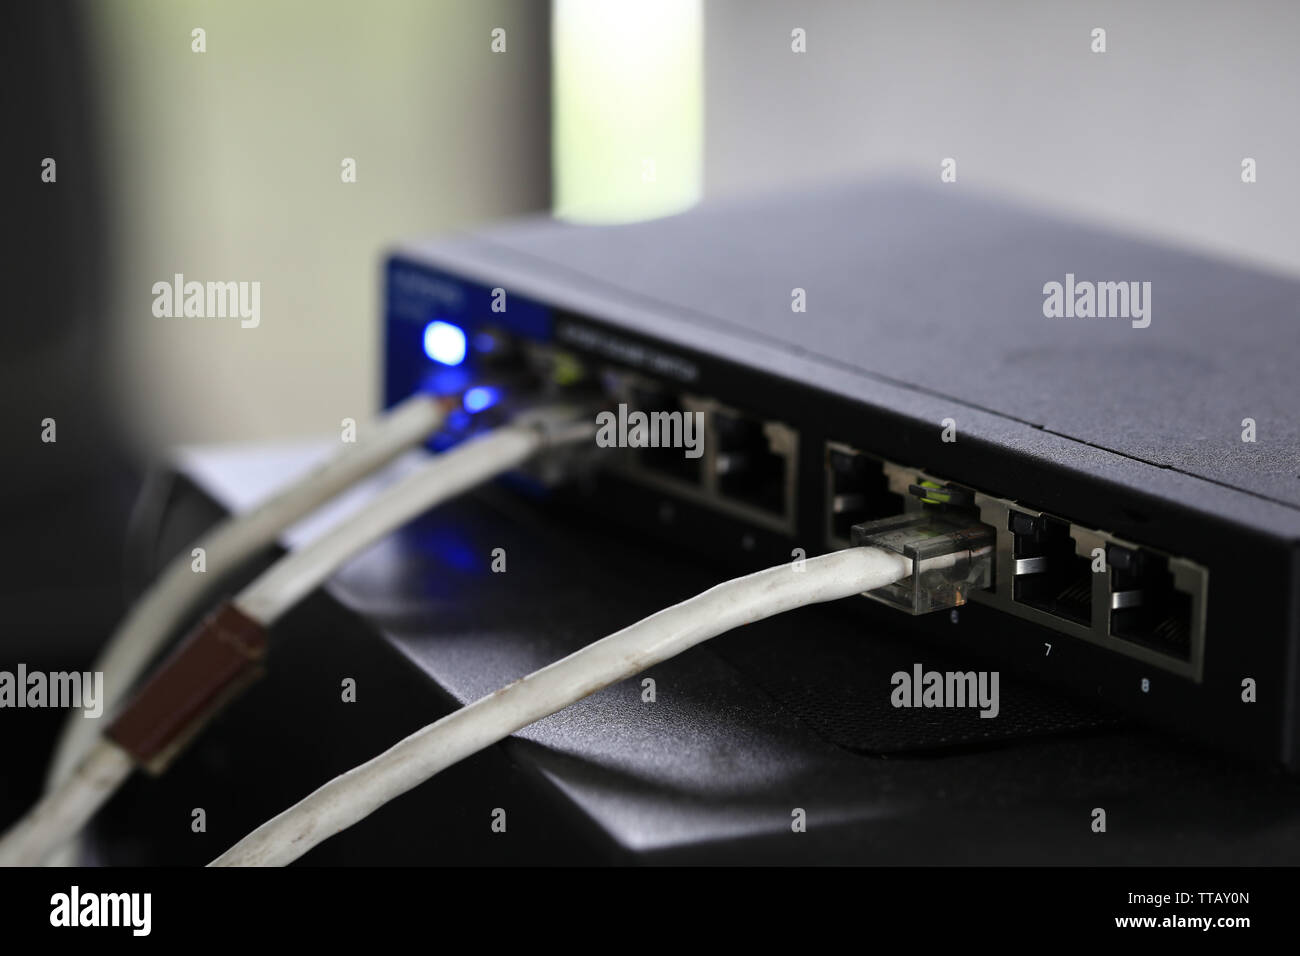 Lwl-Internet, Modem Router Netzwerk Hub. Kabel angeschlossen Router.  Internetzugang, Daten, Speed test Konzept. Ethernet-Kabel angeschlossen  schließen Stockfotografie - Alamy